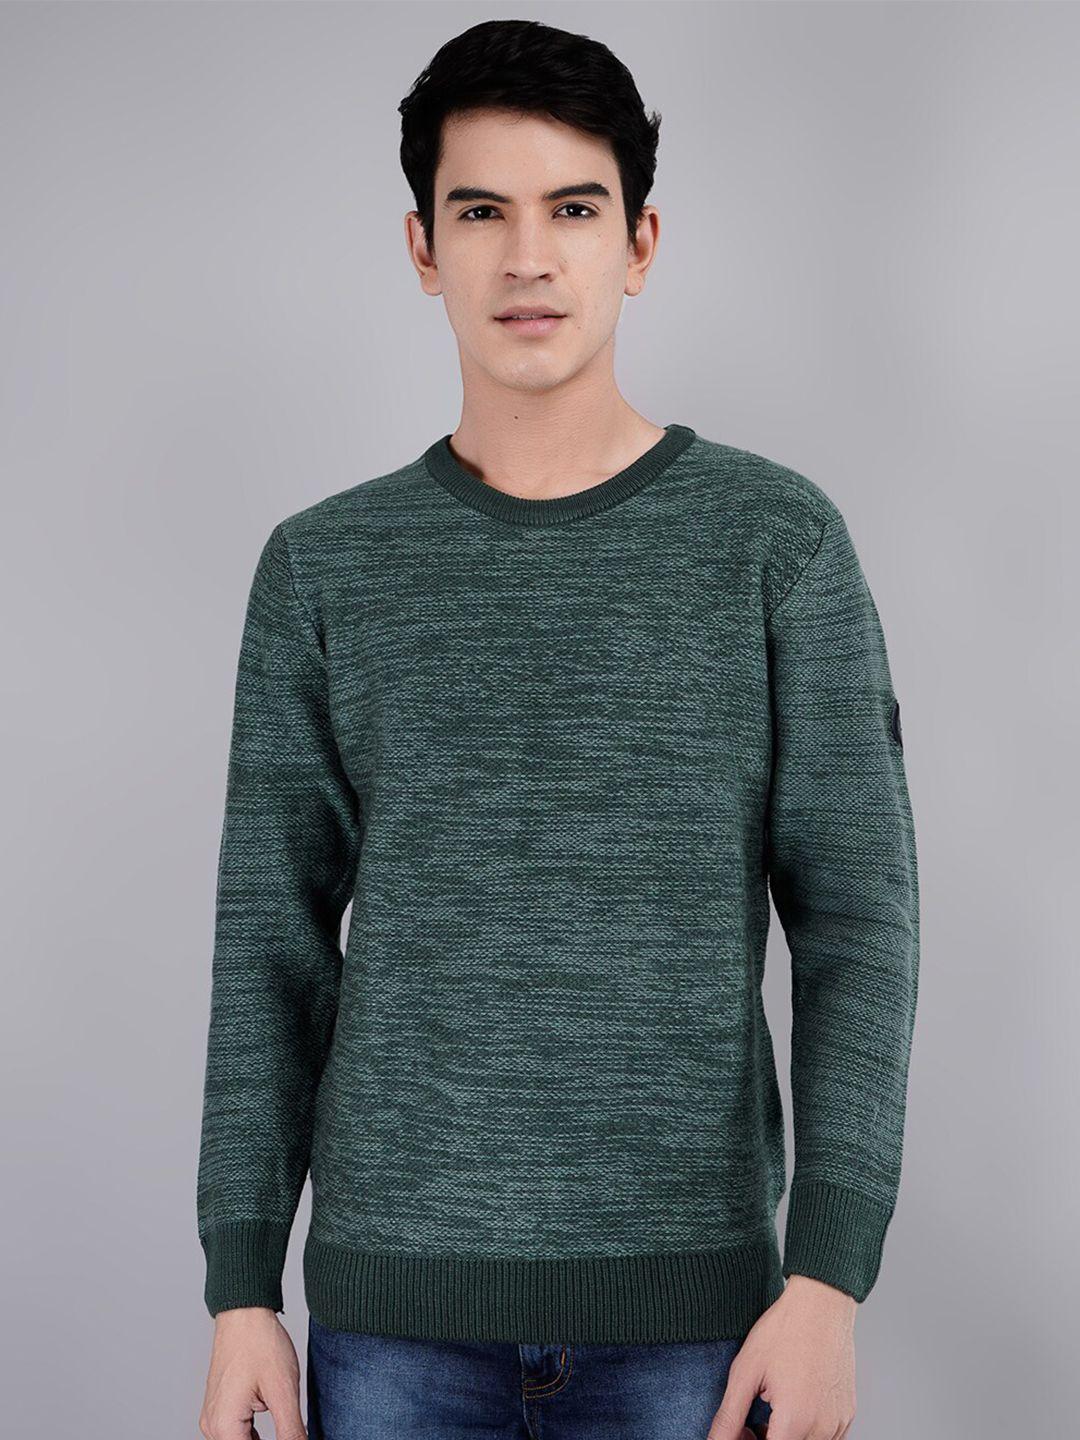 tim-paris-self-designed-round-neck-cotton-pullover